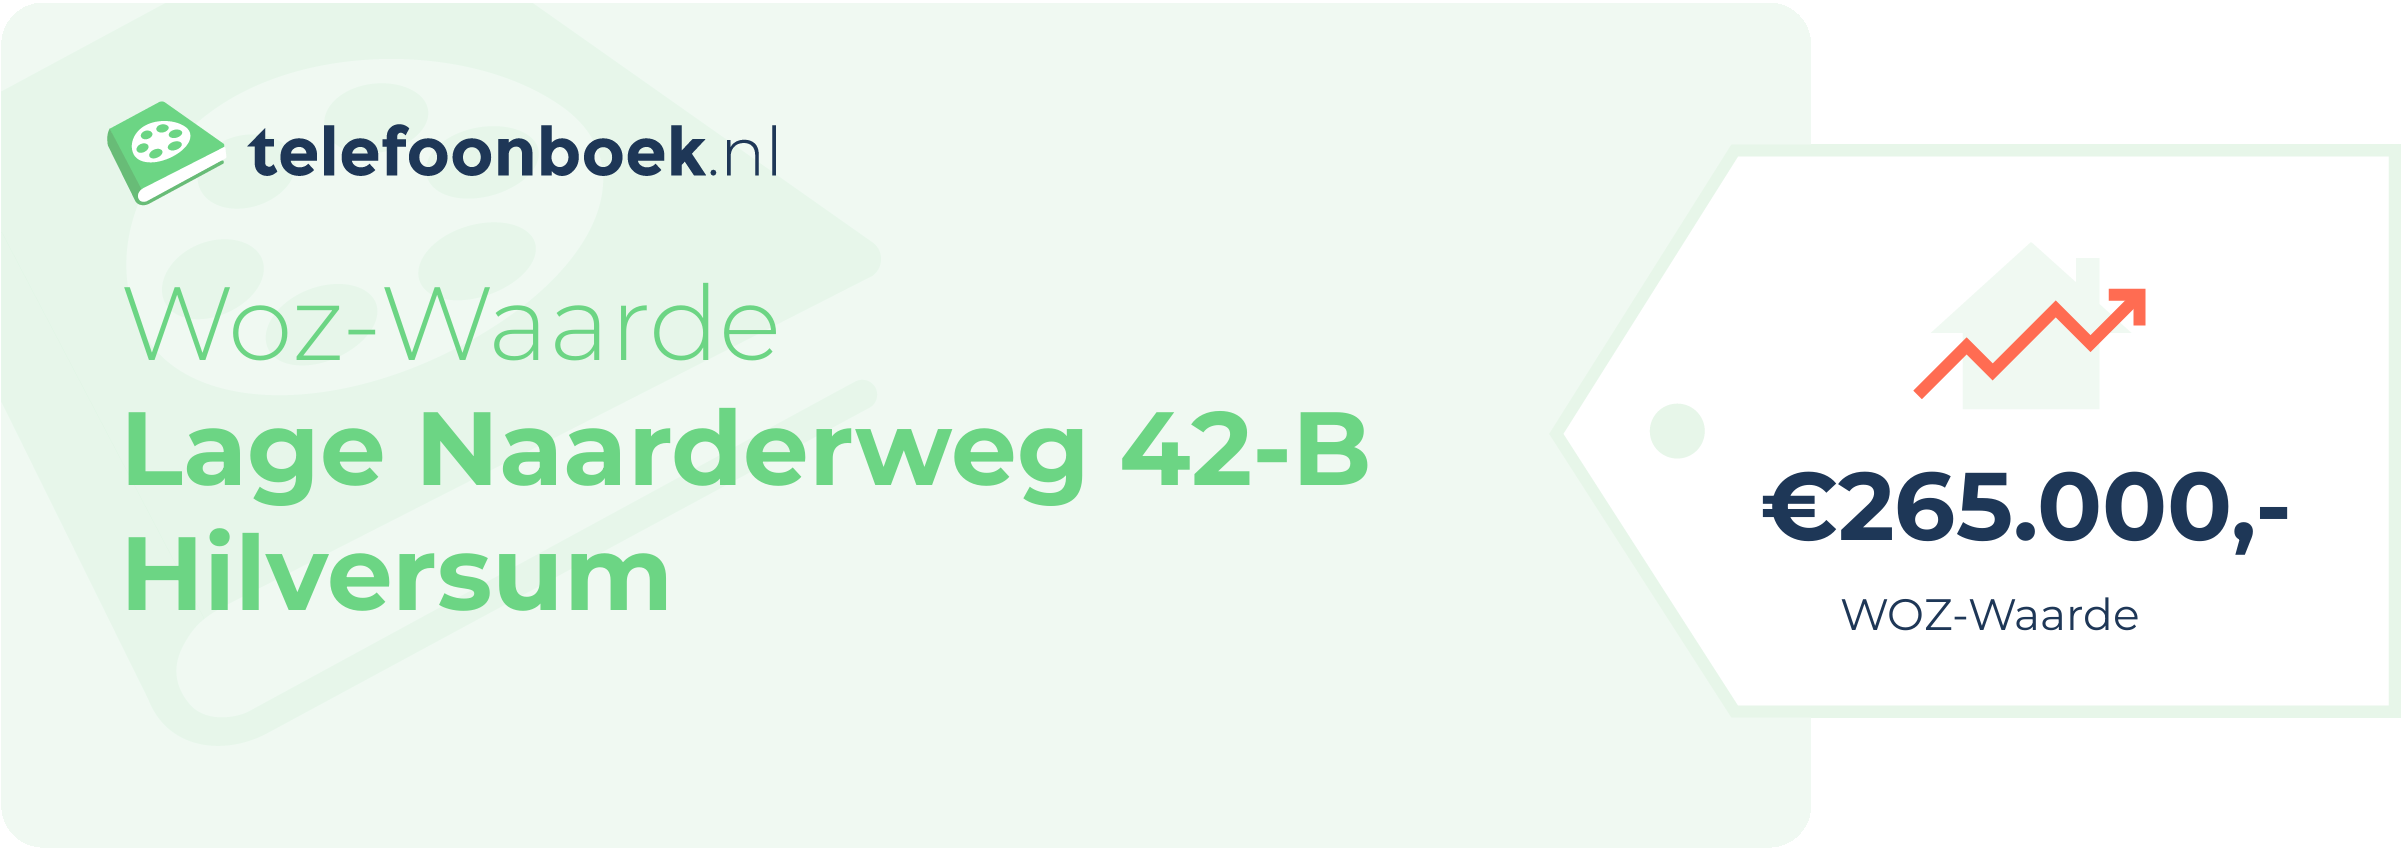 WOZ-waarde Lage Naarderweg 42-B Hilversum